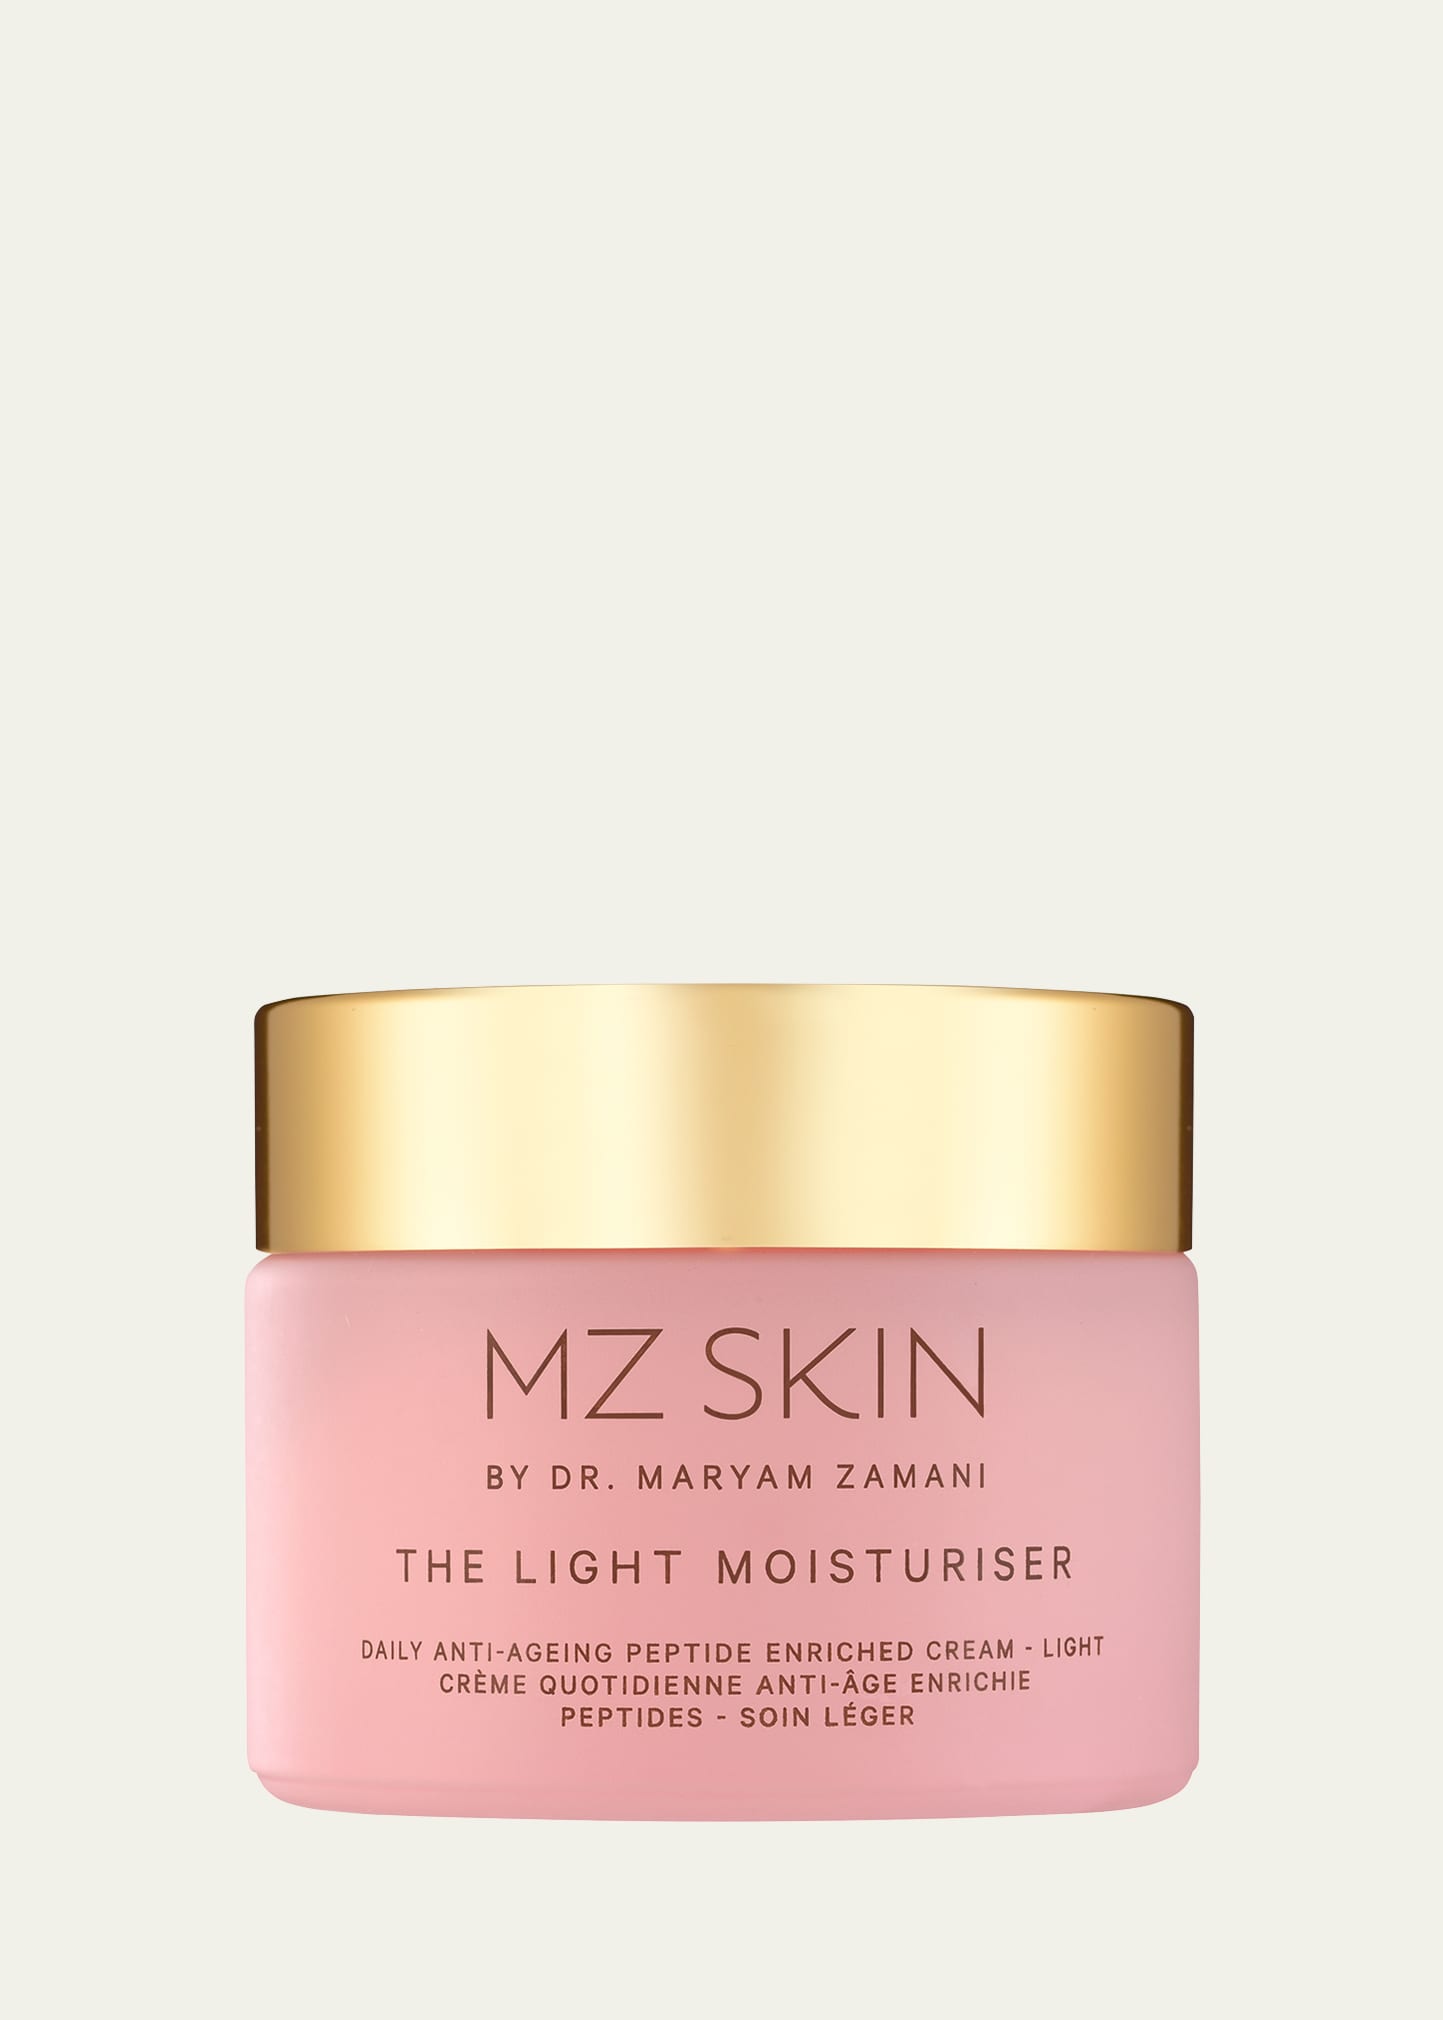 Mz Skin The Light Moisturiser, 1.7 Oz. In White